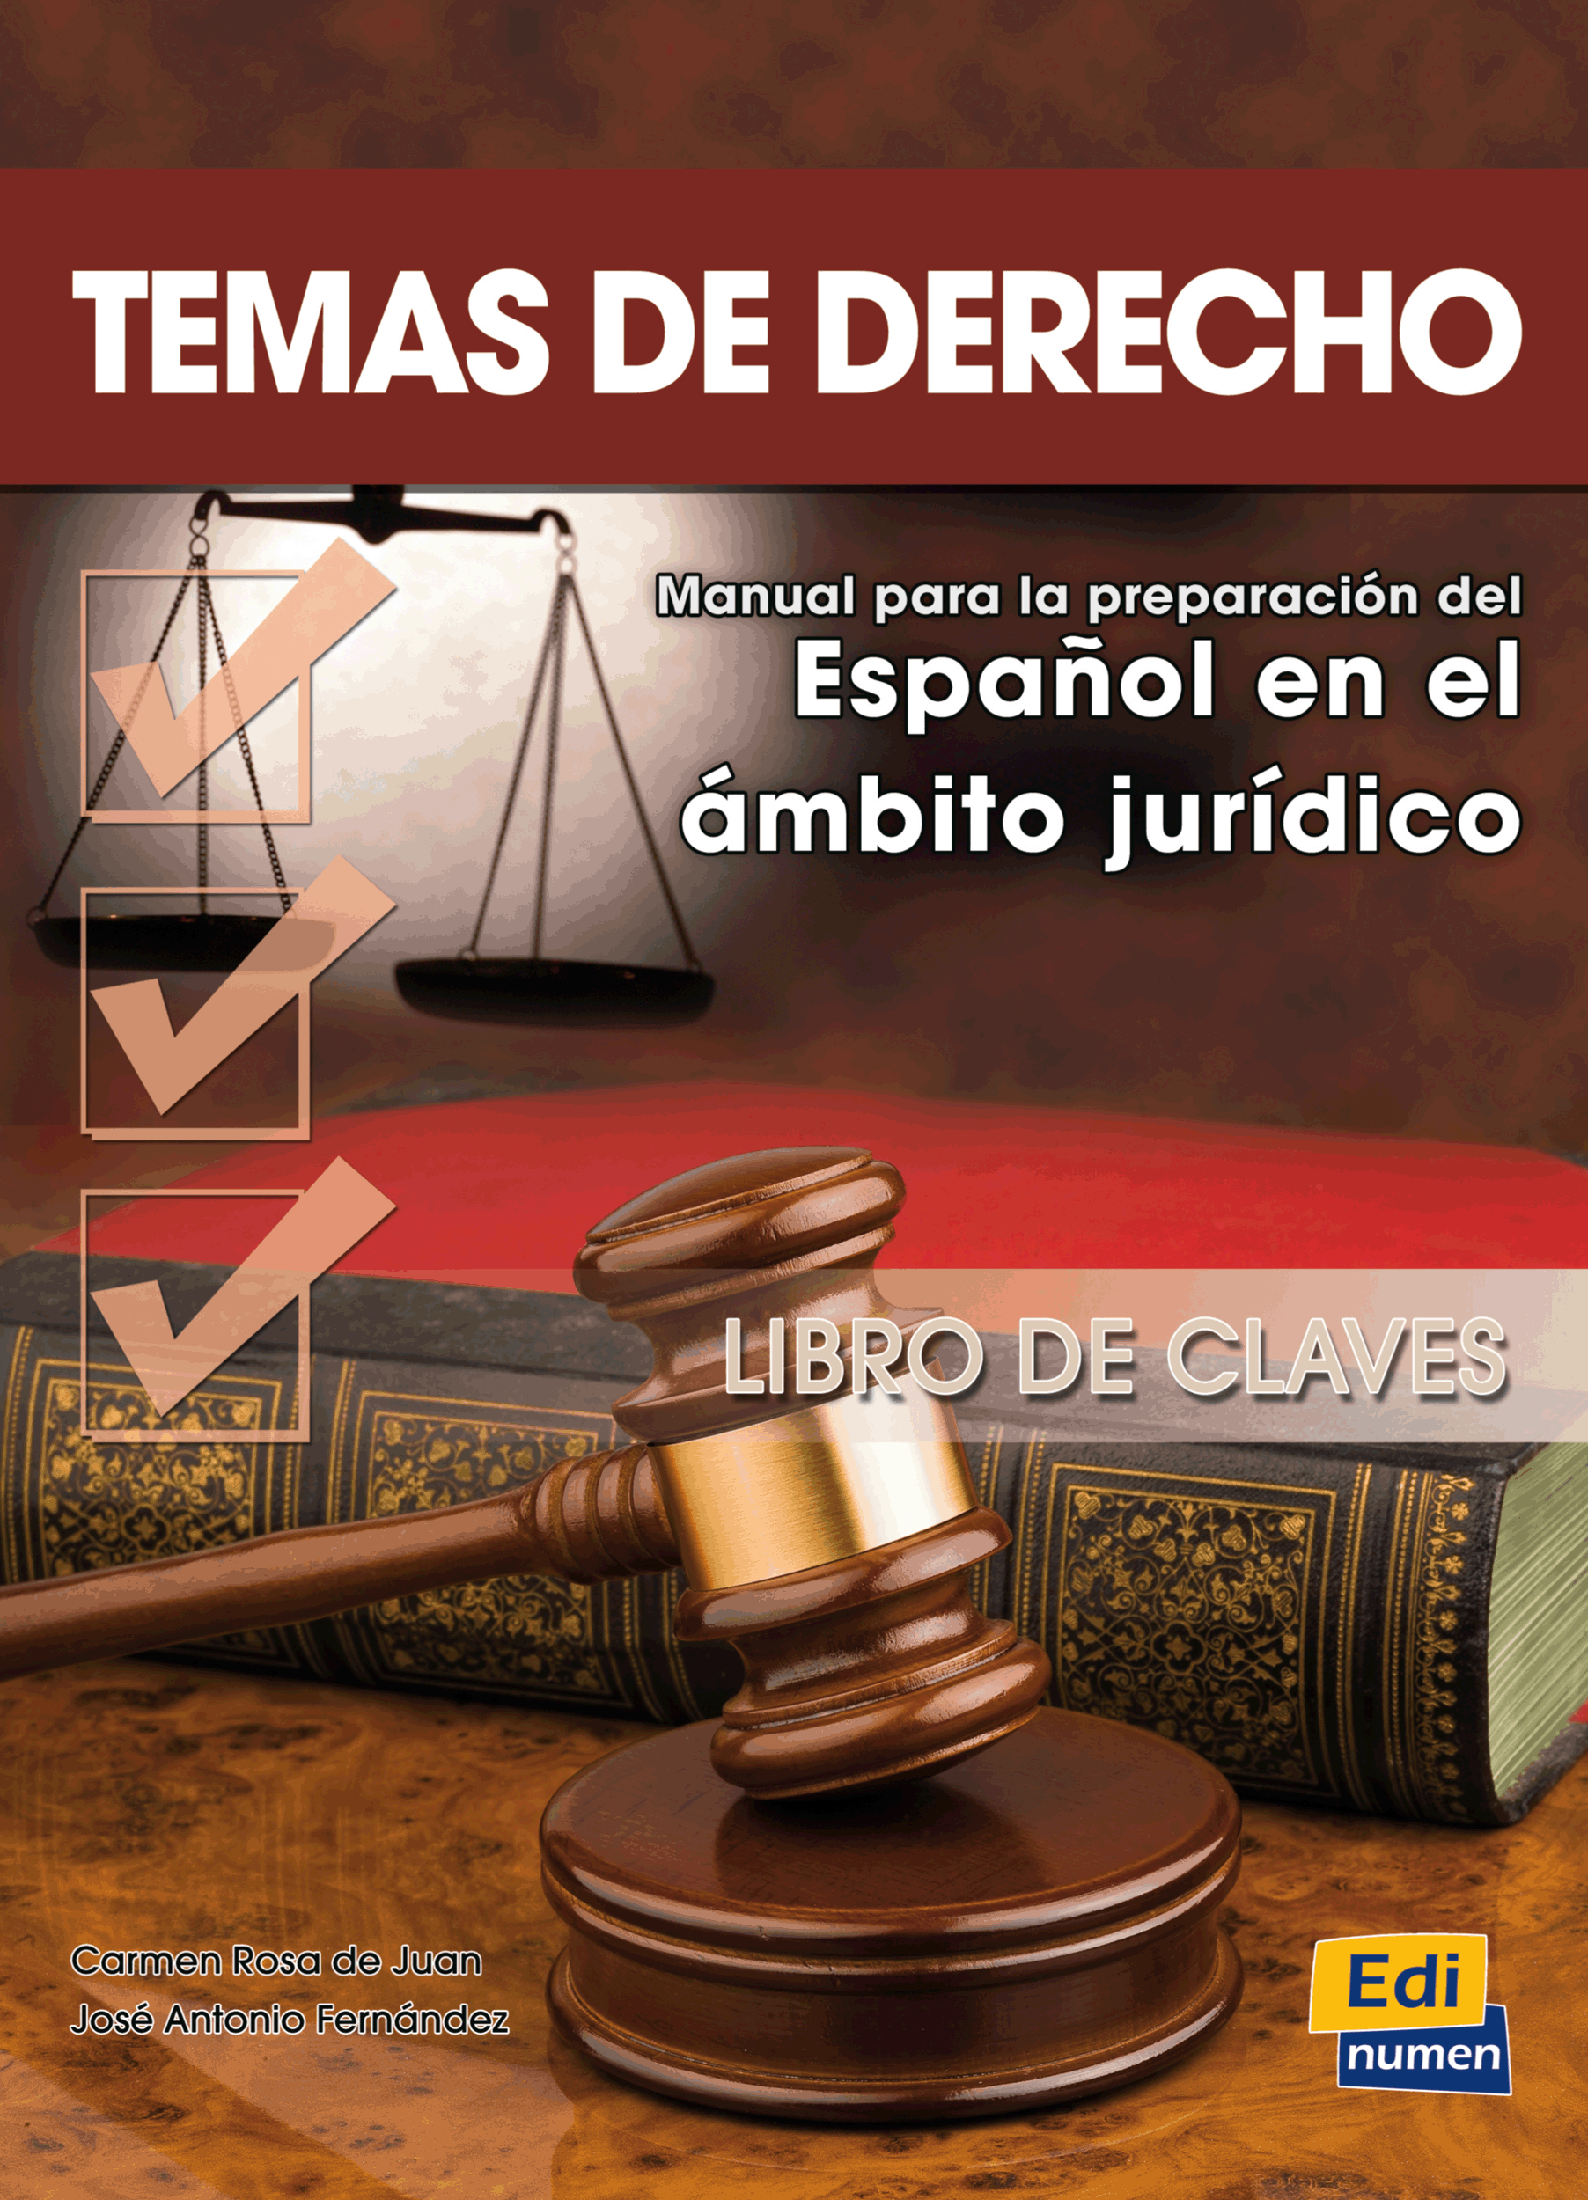 Colección Temas de...: Temas de derecho - Libro de claves